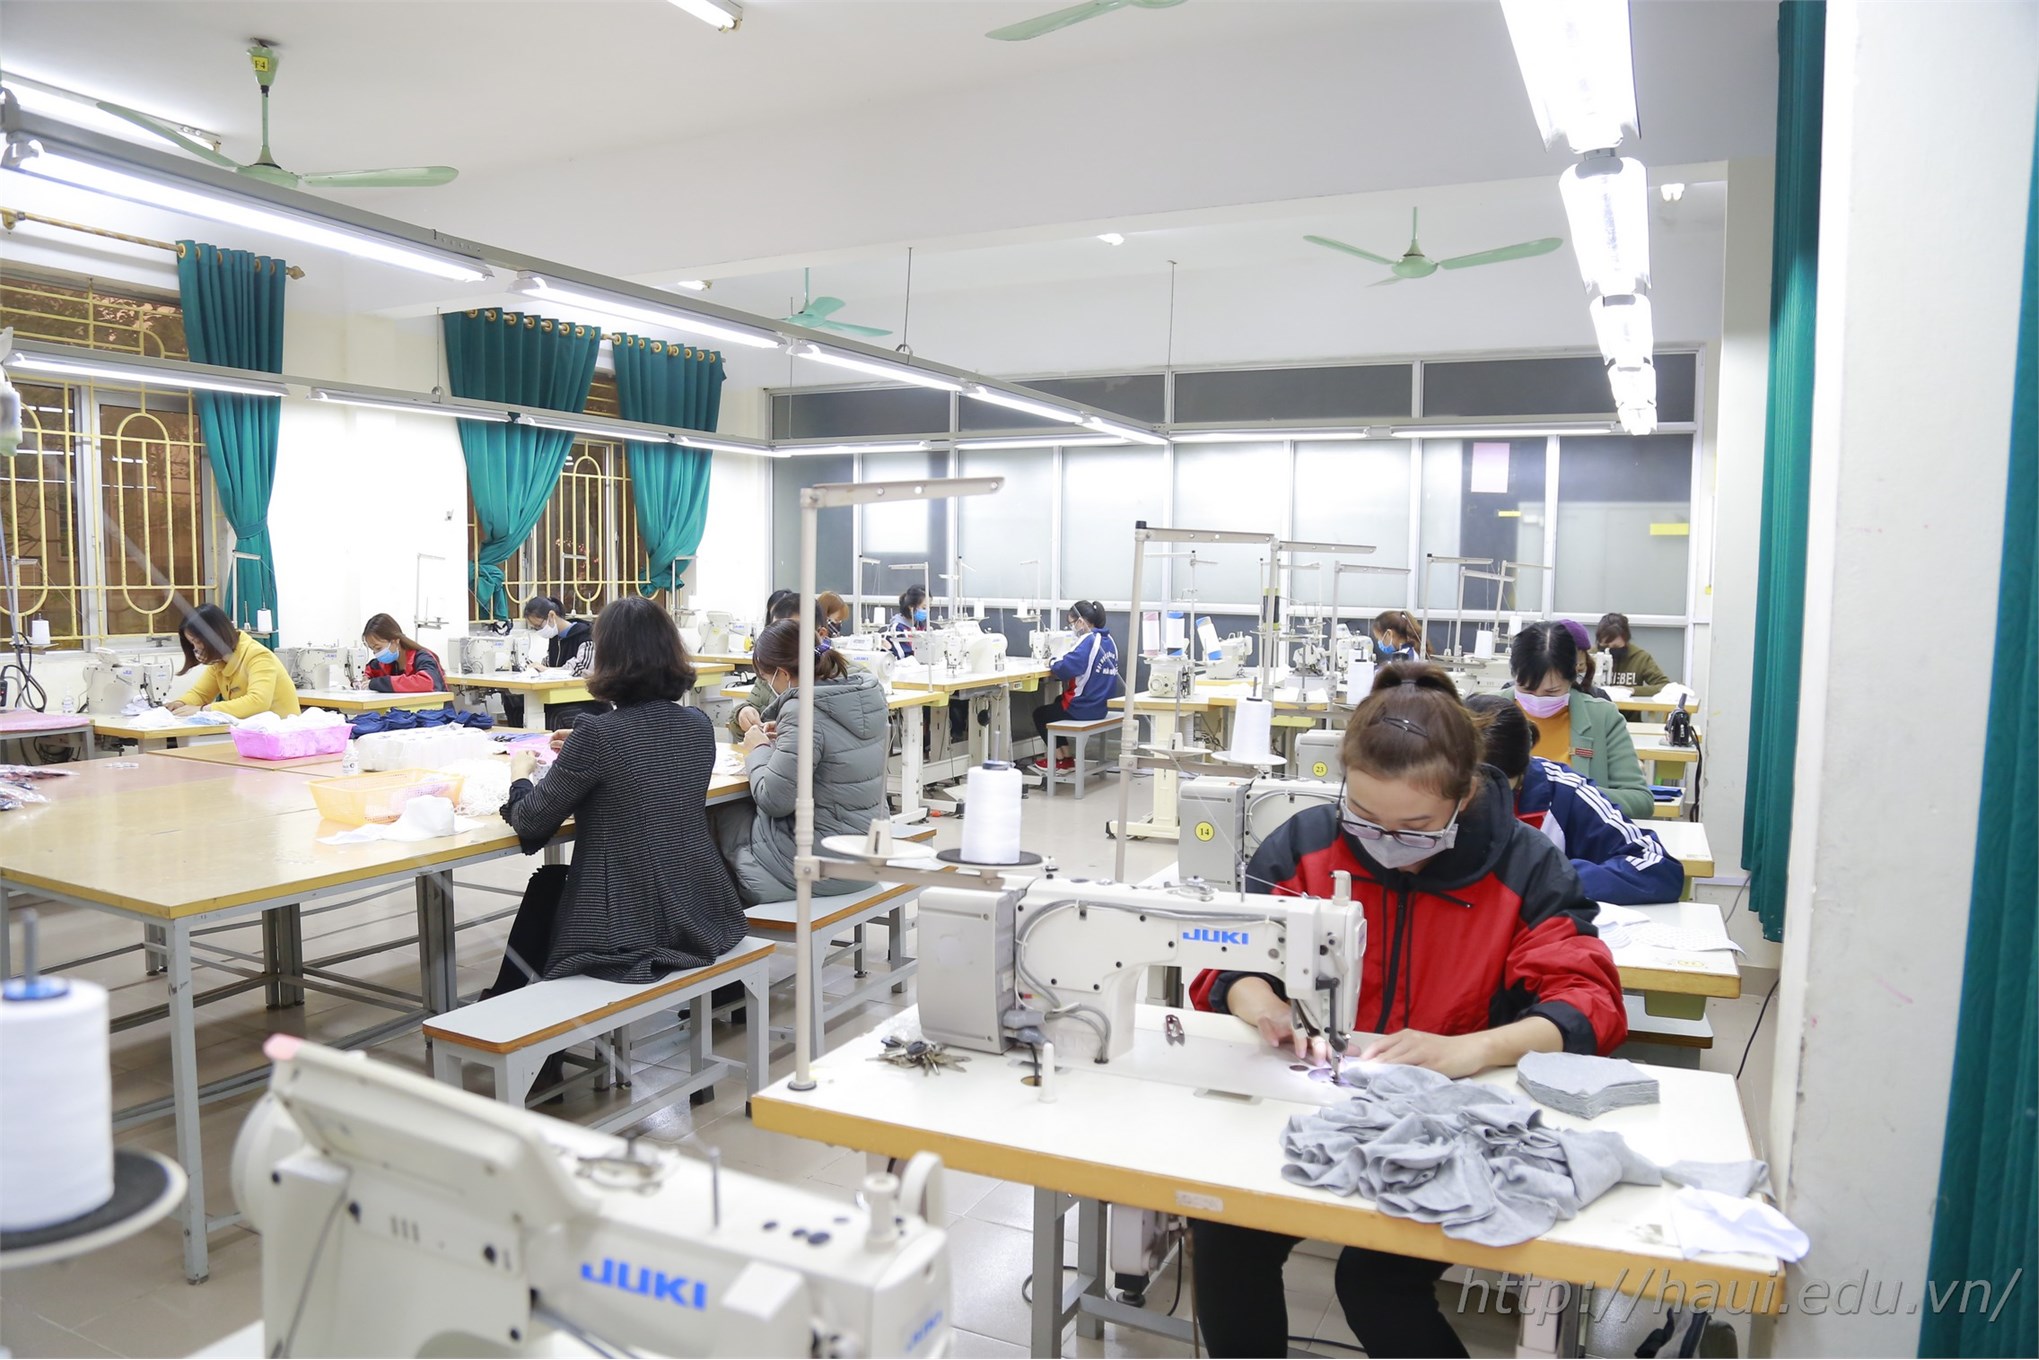 Sau sản xuất dung dịch rửa tay khô, Đại học Công nghiệp Hà Nội tiếp tục sản xuất 30.000 khẩu trang vải phát miễn phí cho sinh viên, cán bộ giảng viên nhà trường